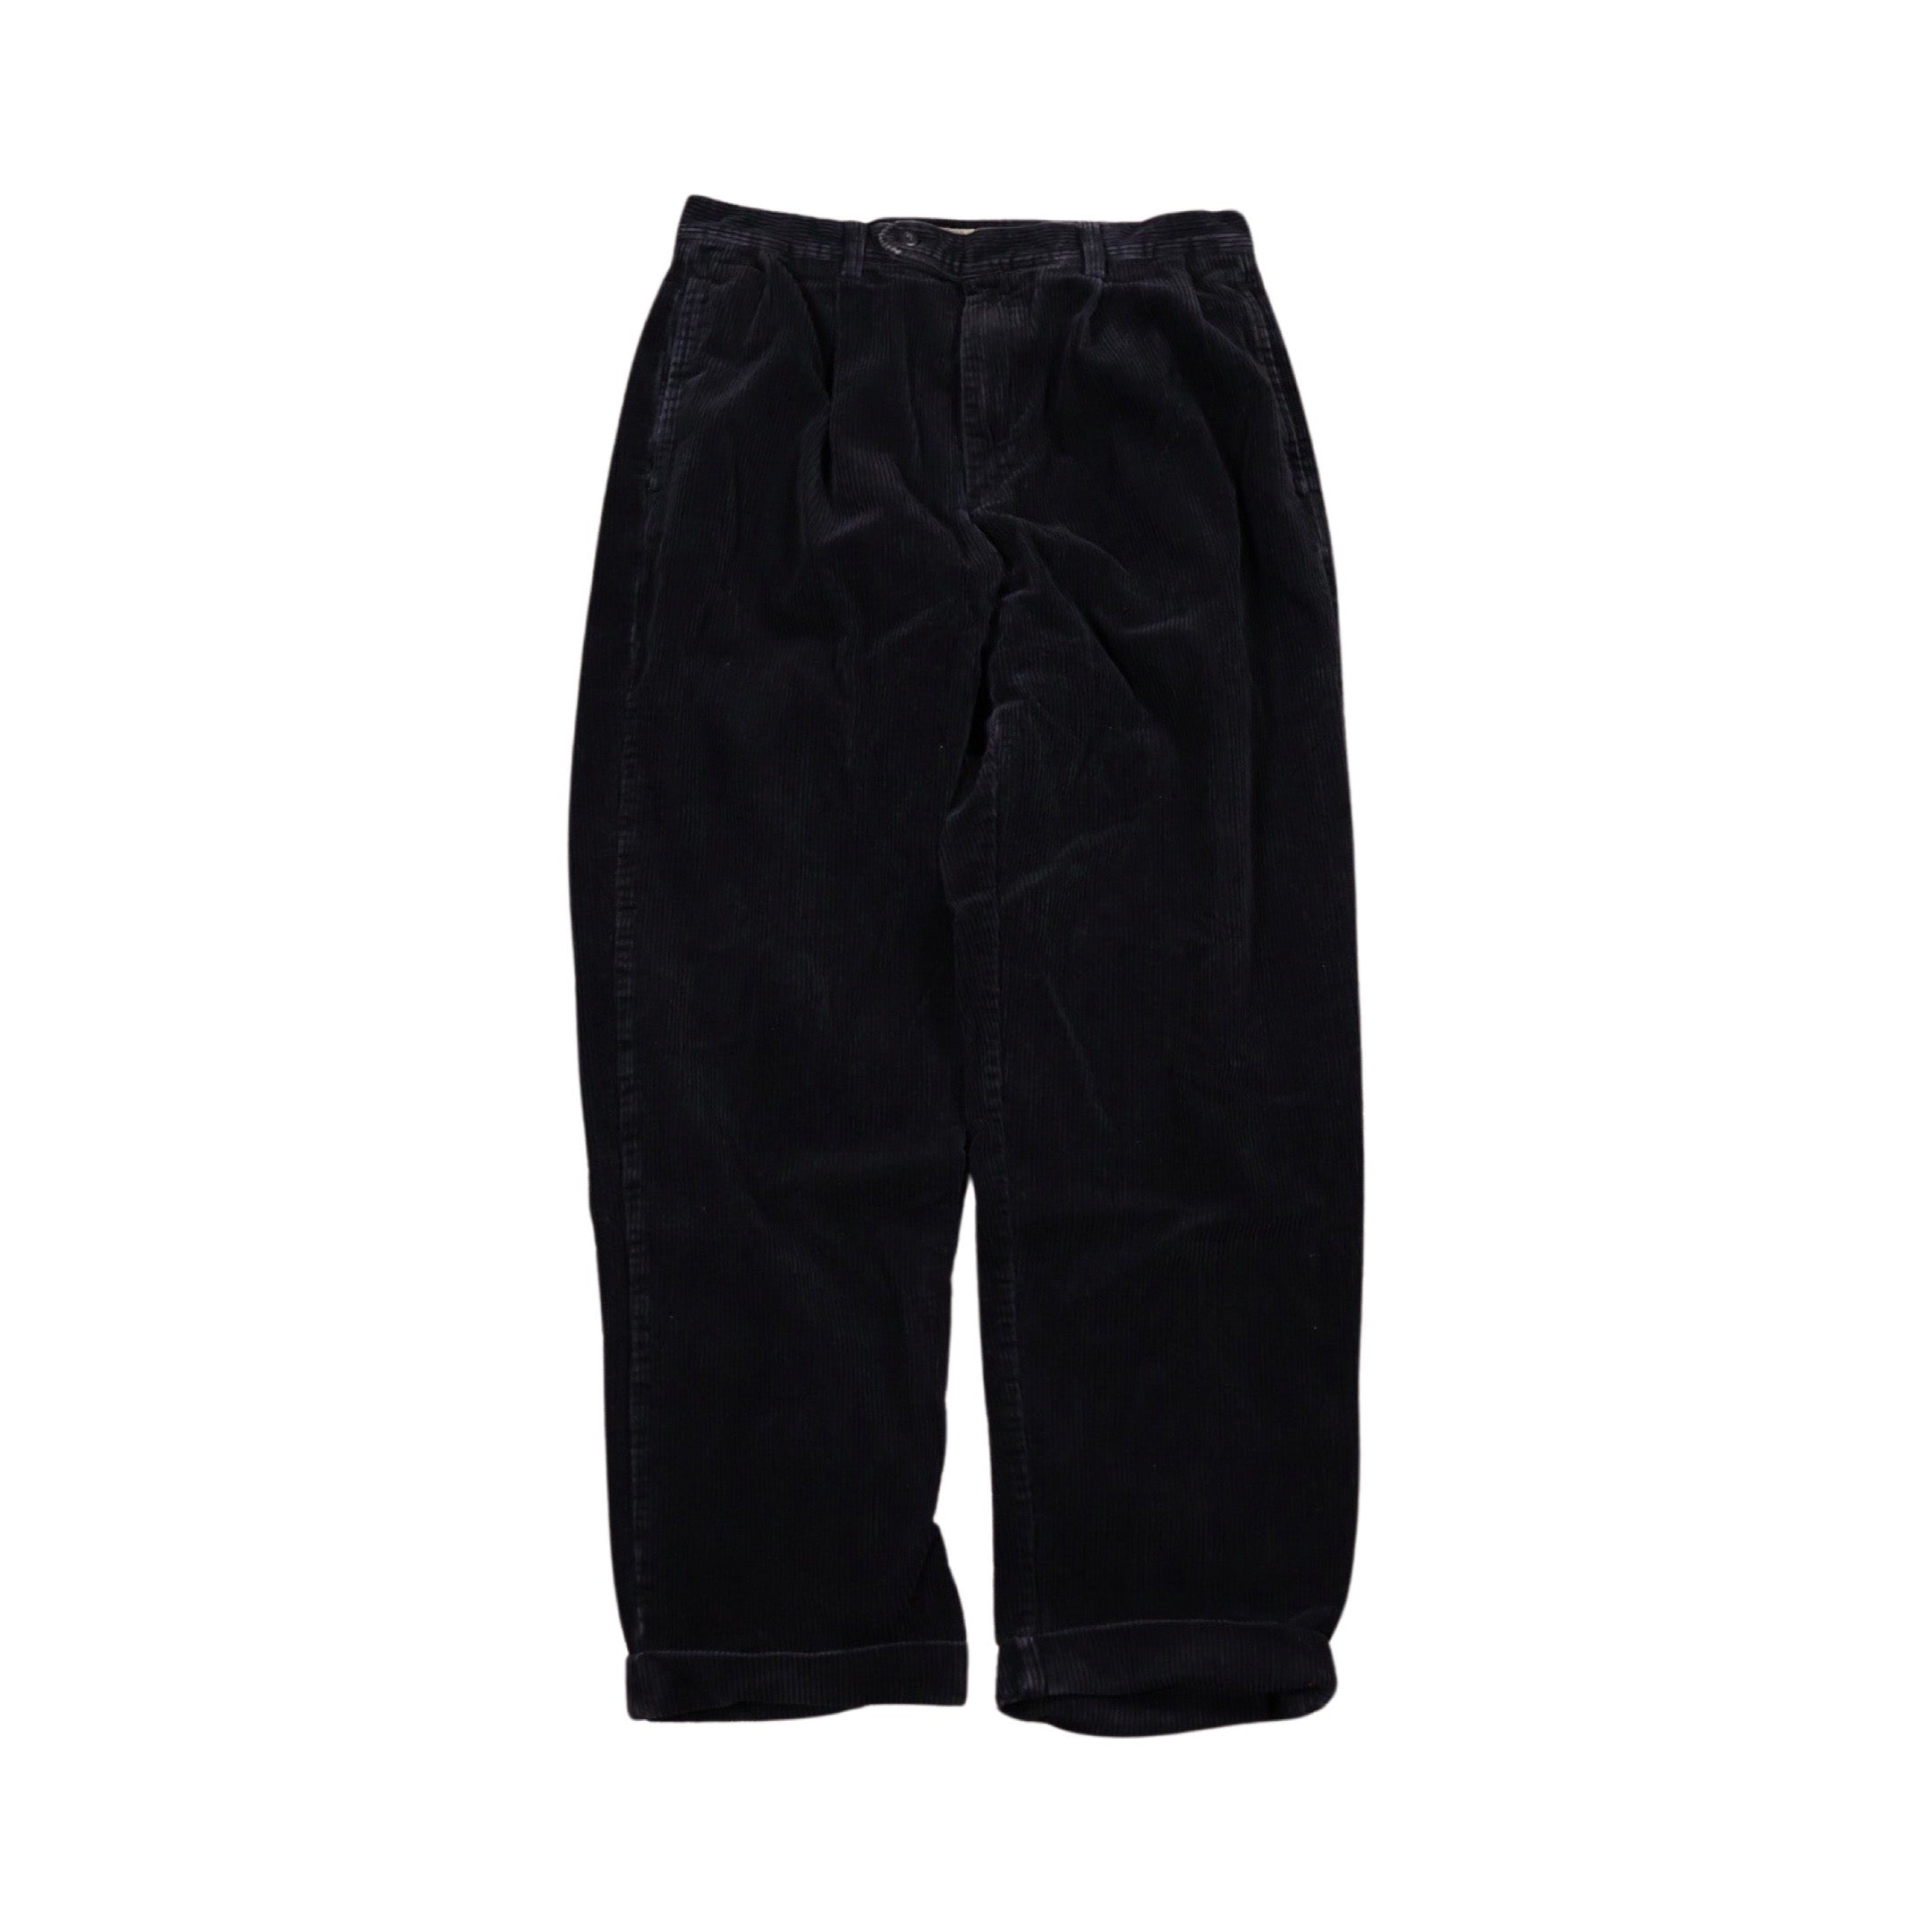 Black Corduroy Pants (32”)